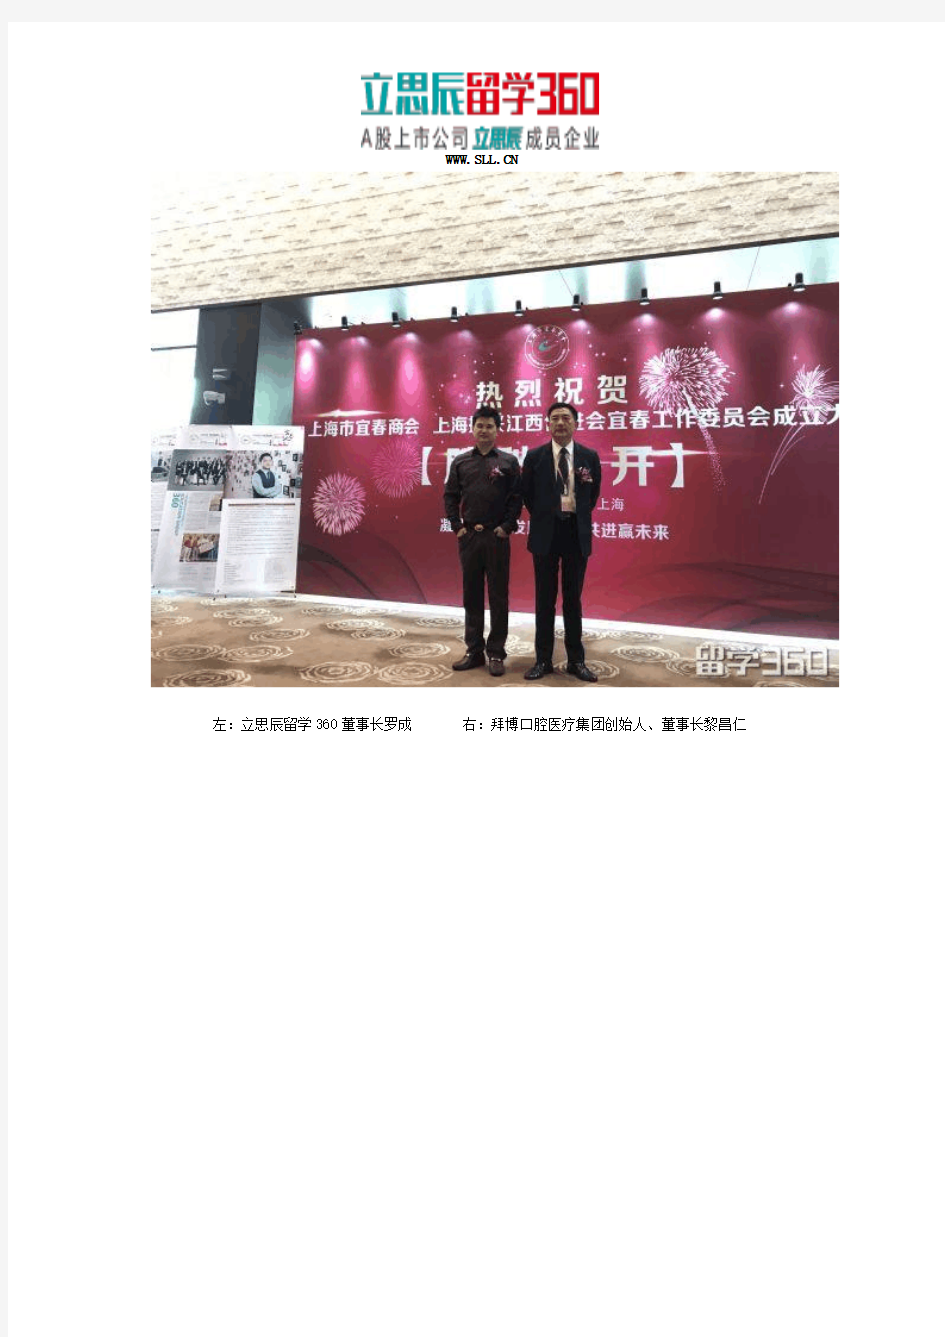 凝聚乡情,共谋发展：罗成当选上海市宜春商会首届执行会长